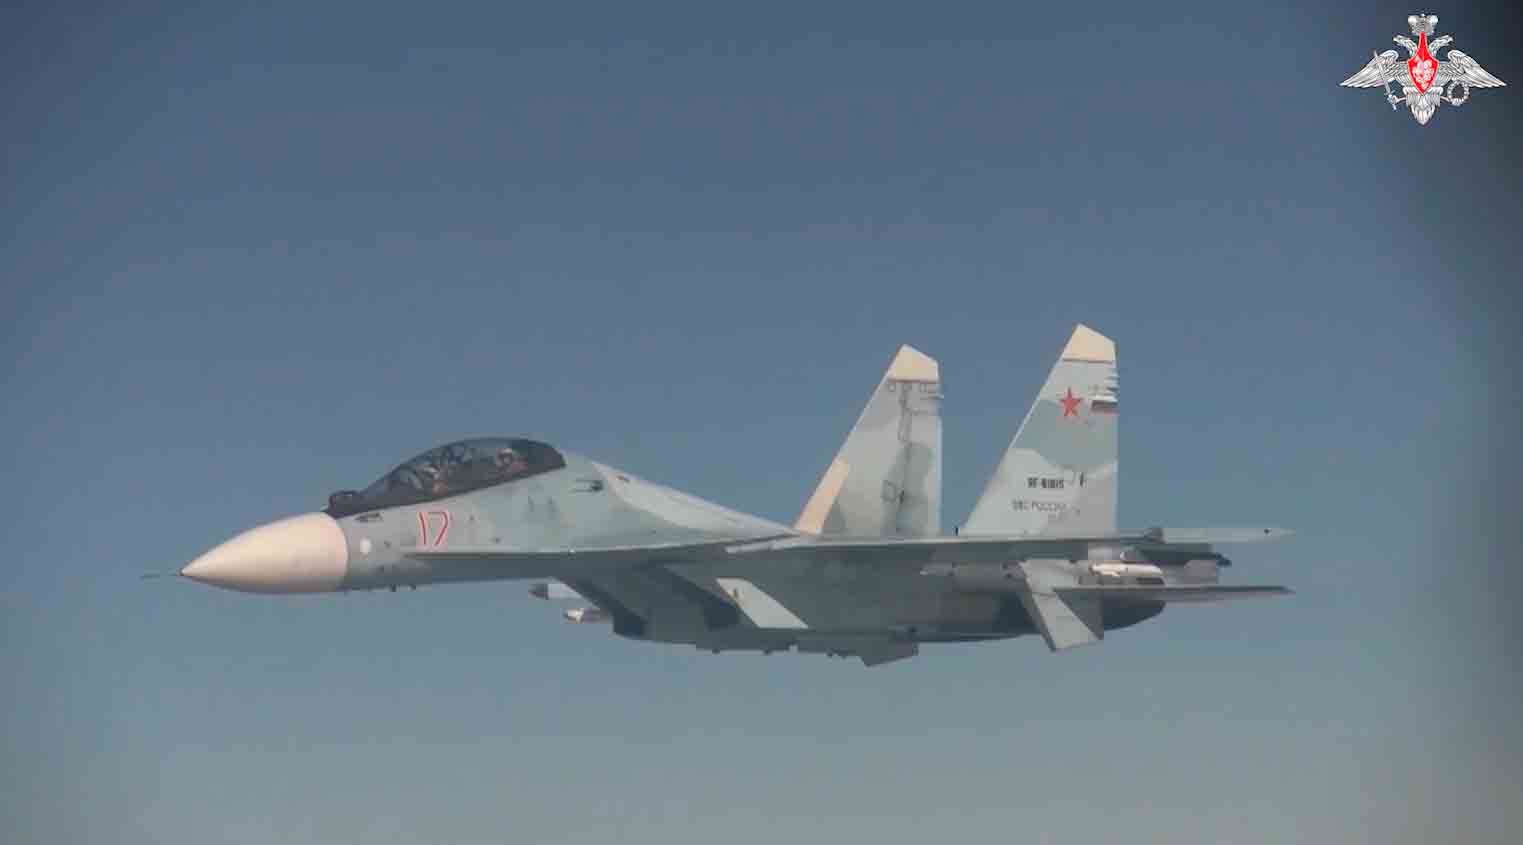 A képek azt mutatják, hogy a bombázókat orosz Su-35S és Su-30SM vadászgépek kís érték